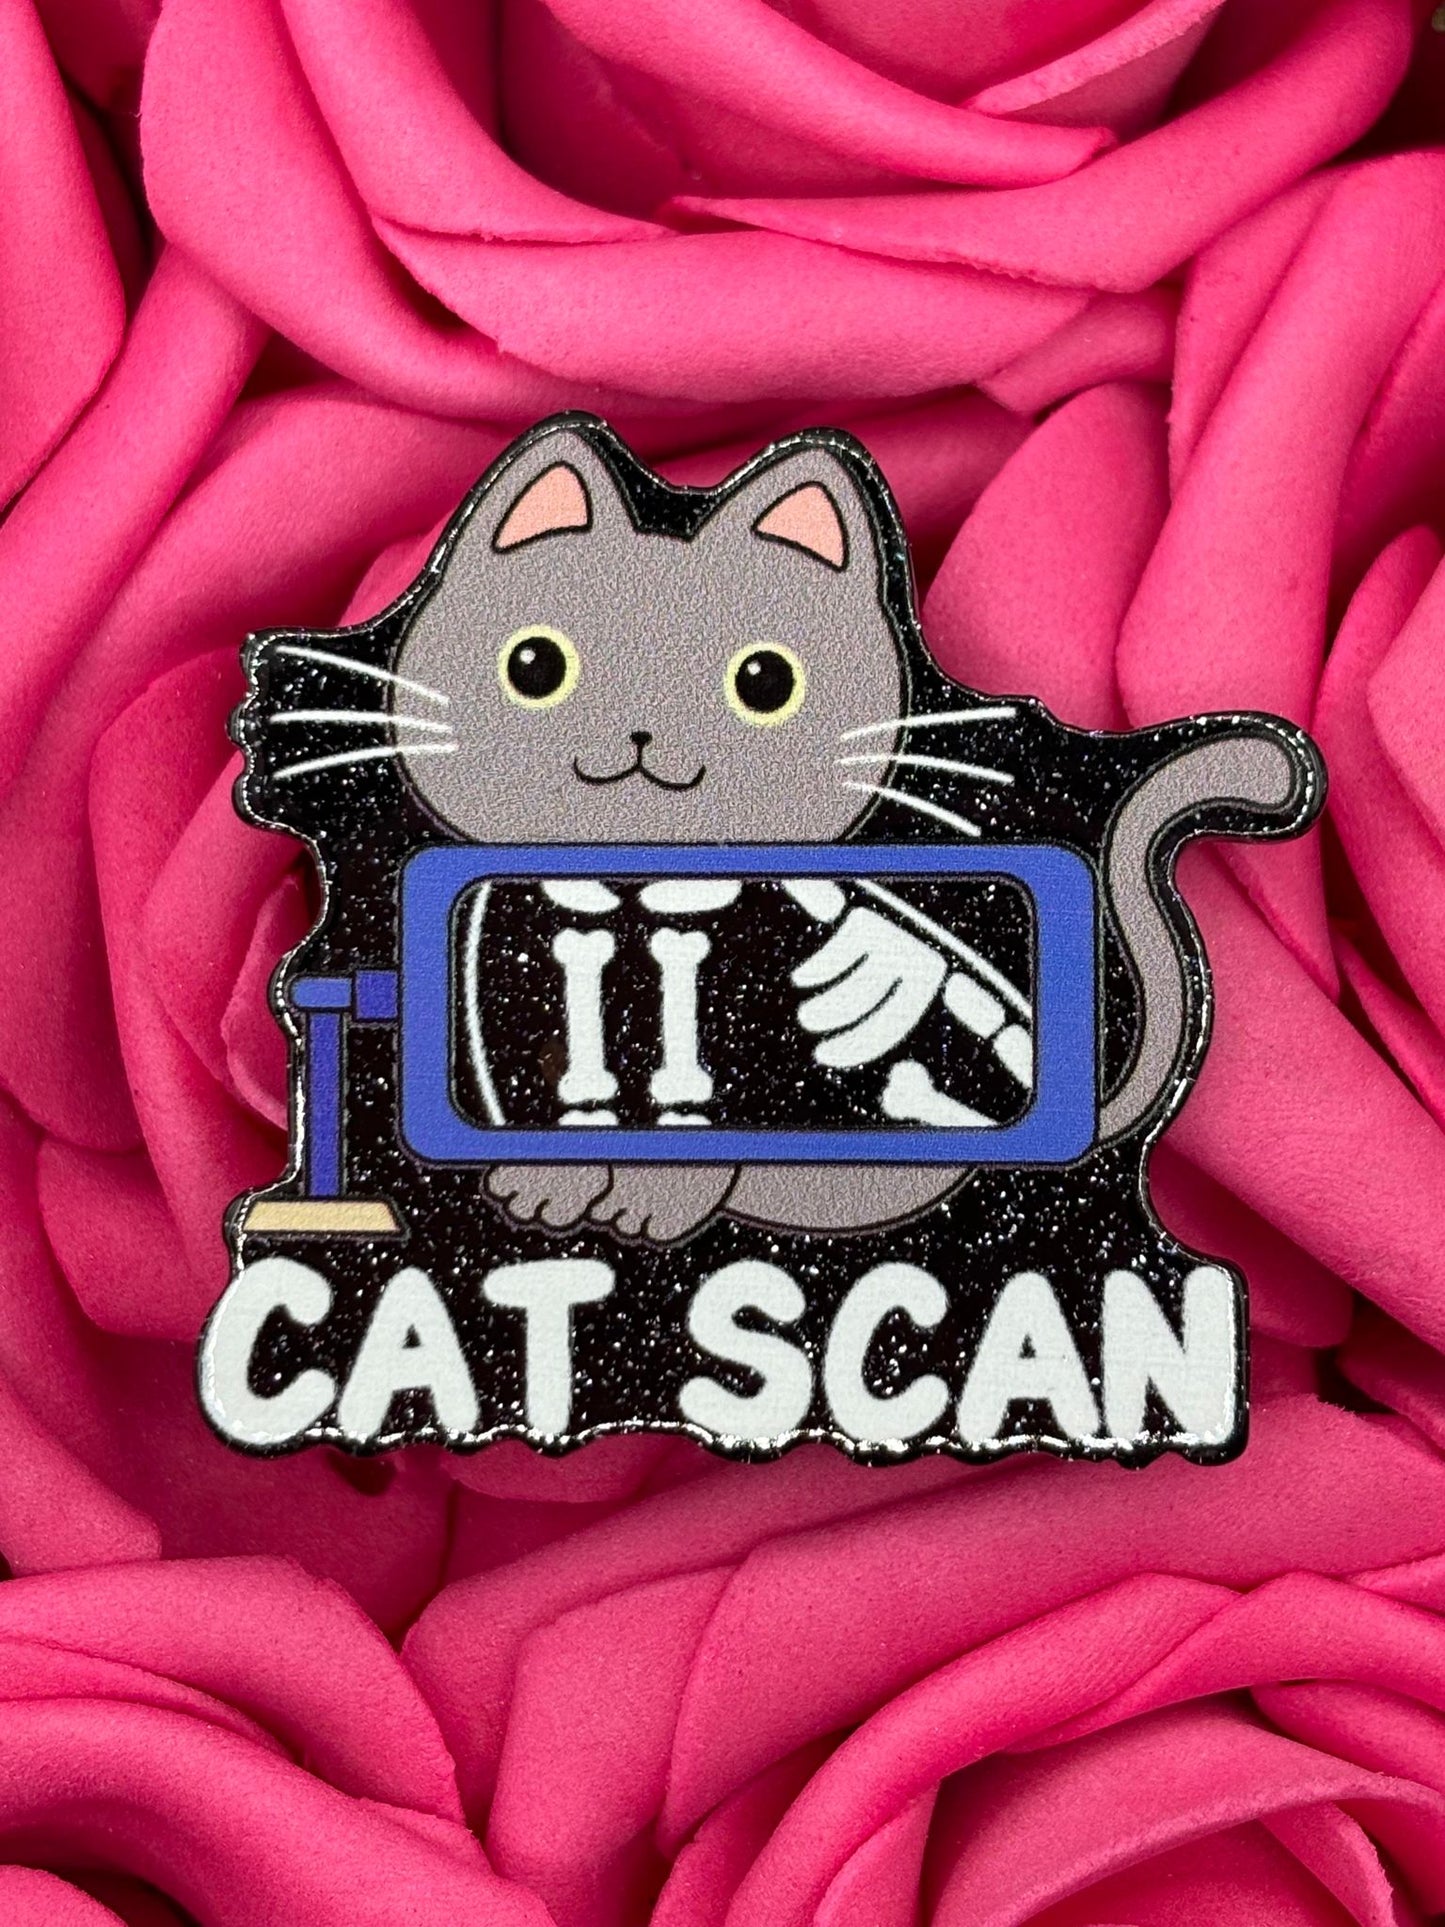 #2623 Cat Scan